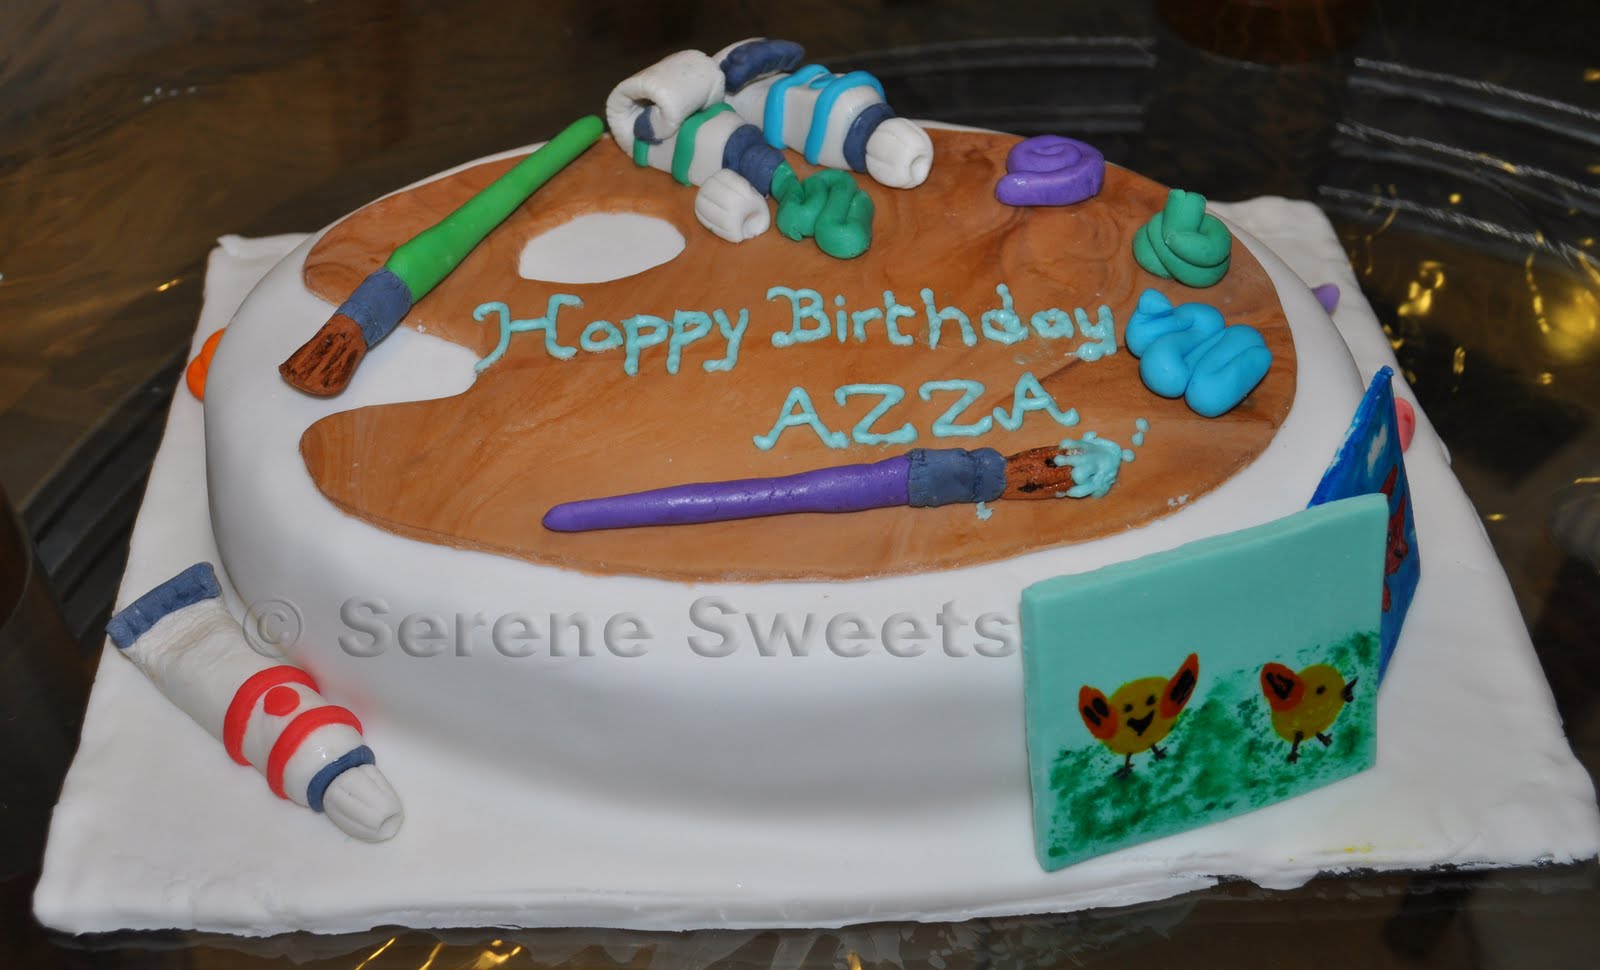 Serene Sweets Artist Palette Birthday Cake